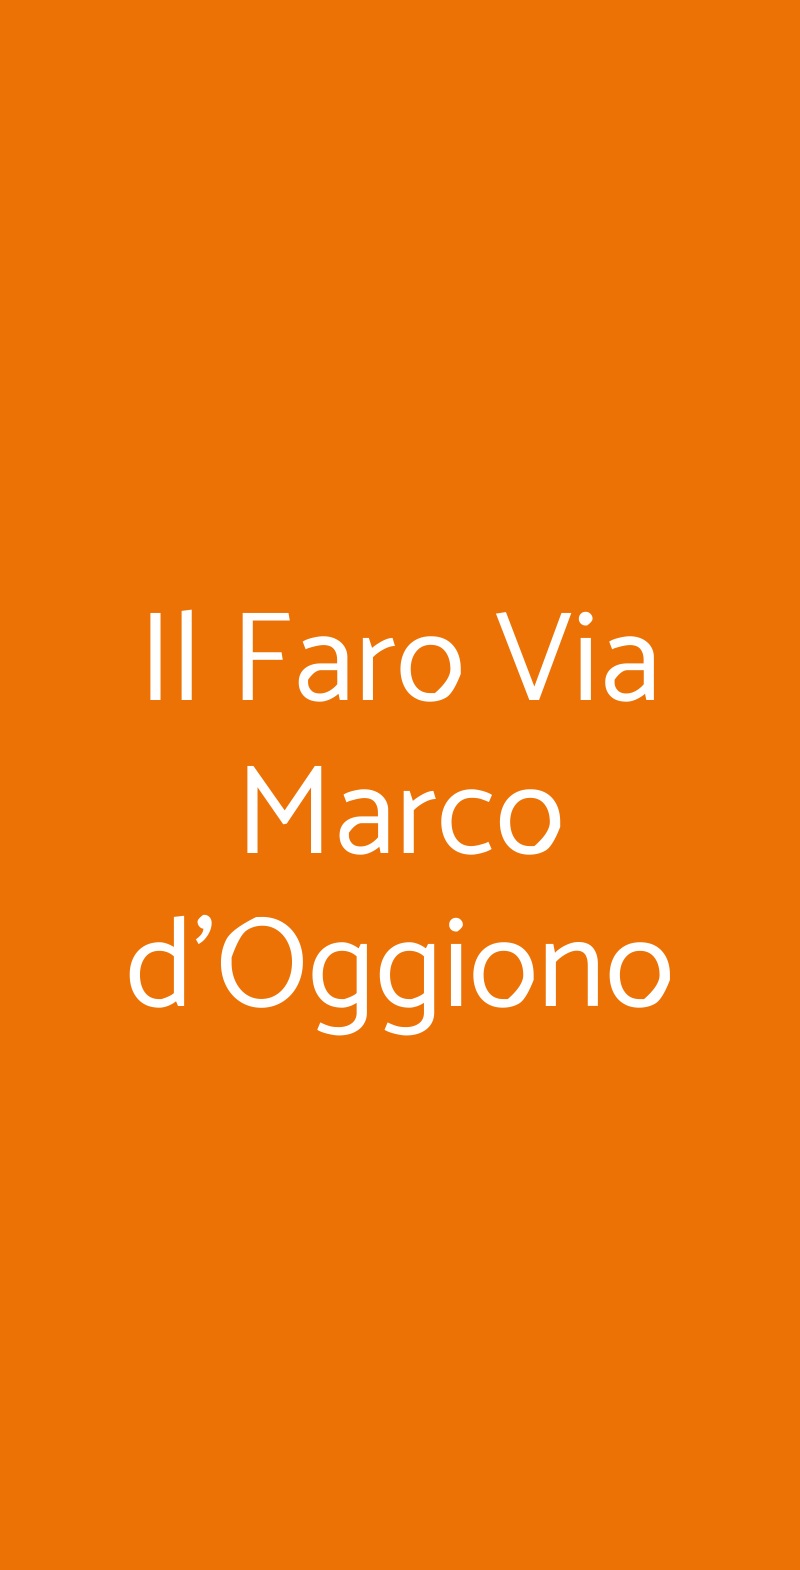 Il Faro Via Marco d'Oggiono Milano menù 1 pagina